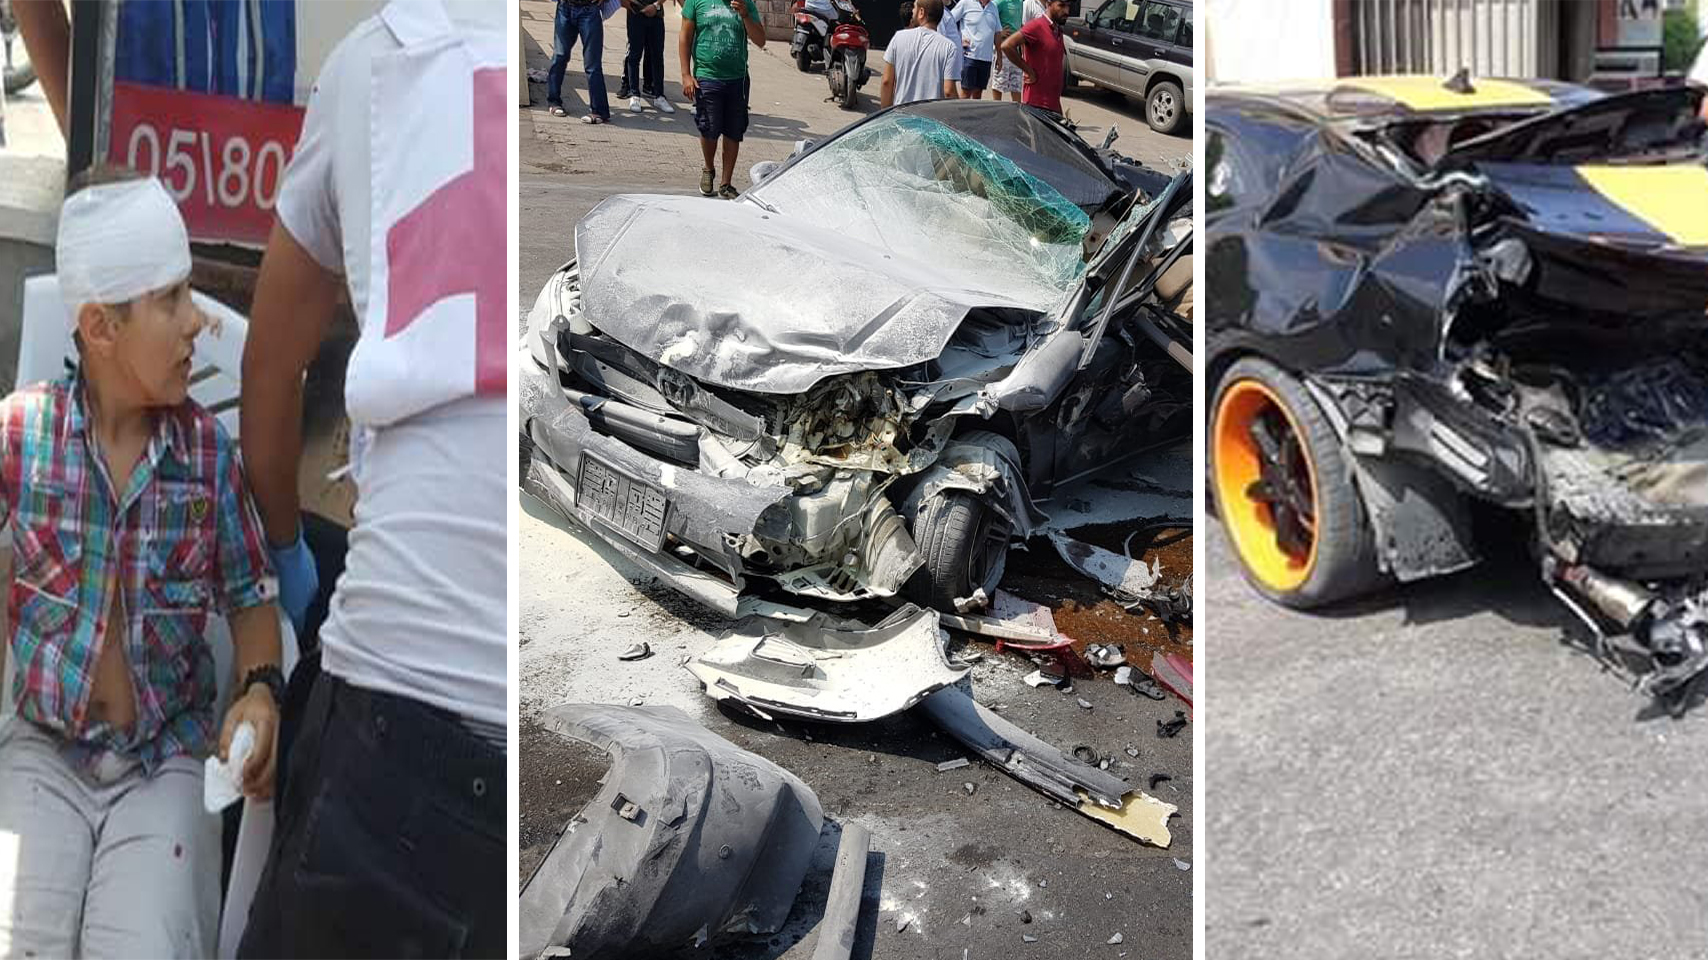 بالصور / شاحنة تمزق مجموعة سيارات في بشامون وسقوط 10 جرحى